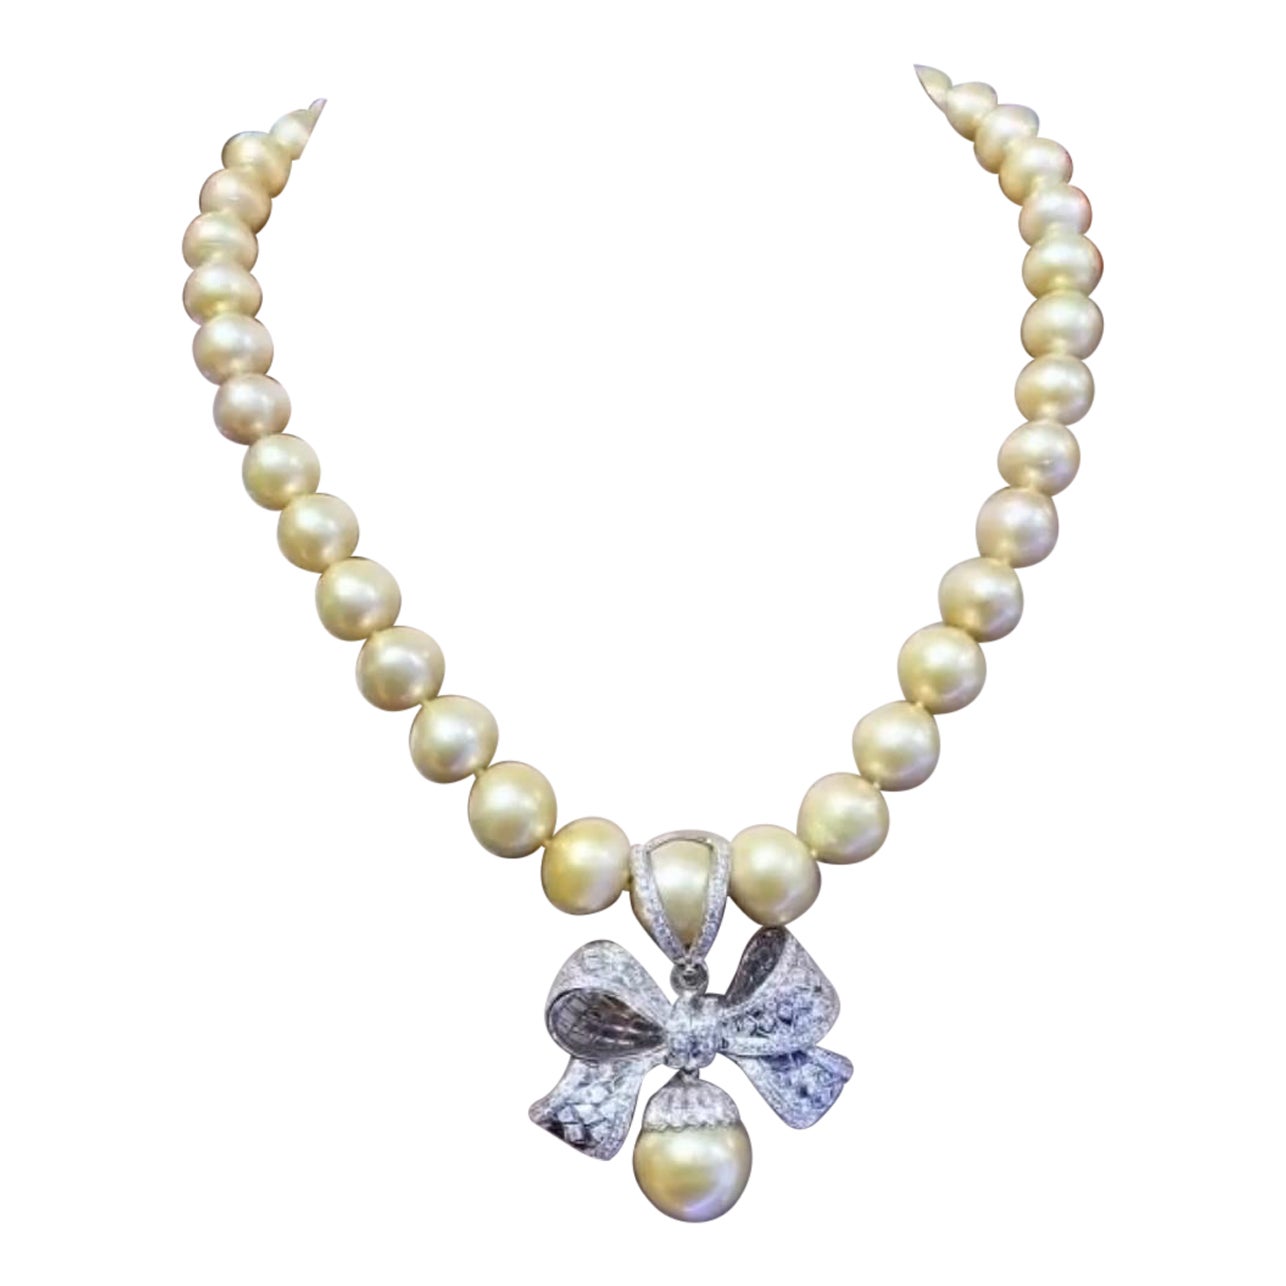 Perles dorées des mers du Sud certifiées GIT  Collier en or 18K avec diamants  